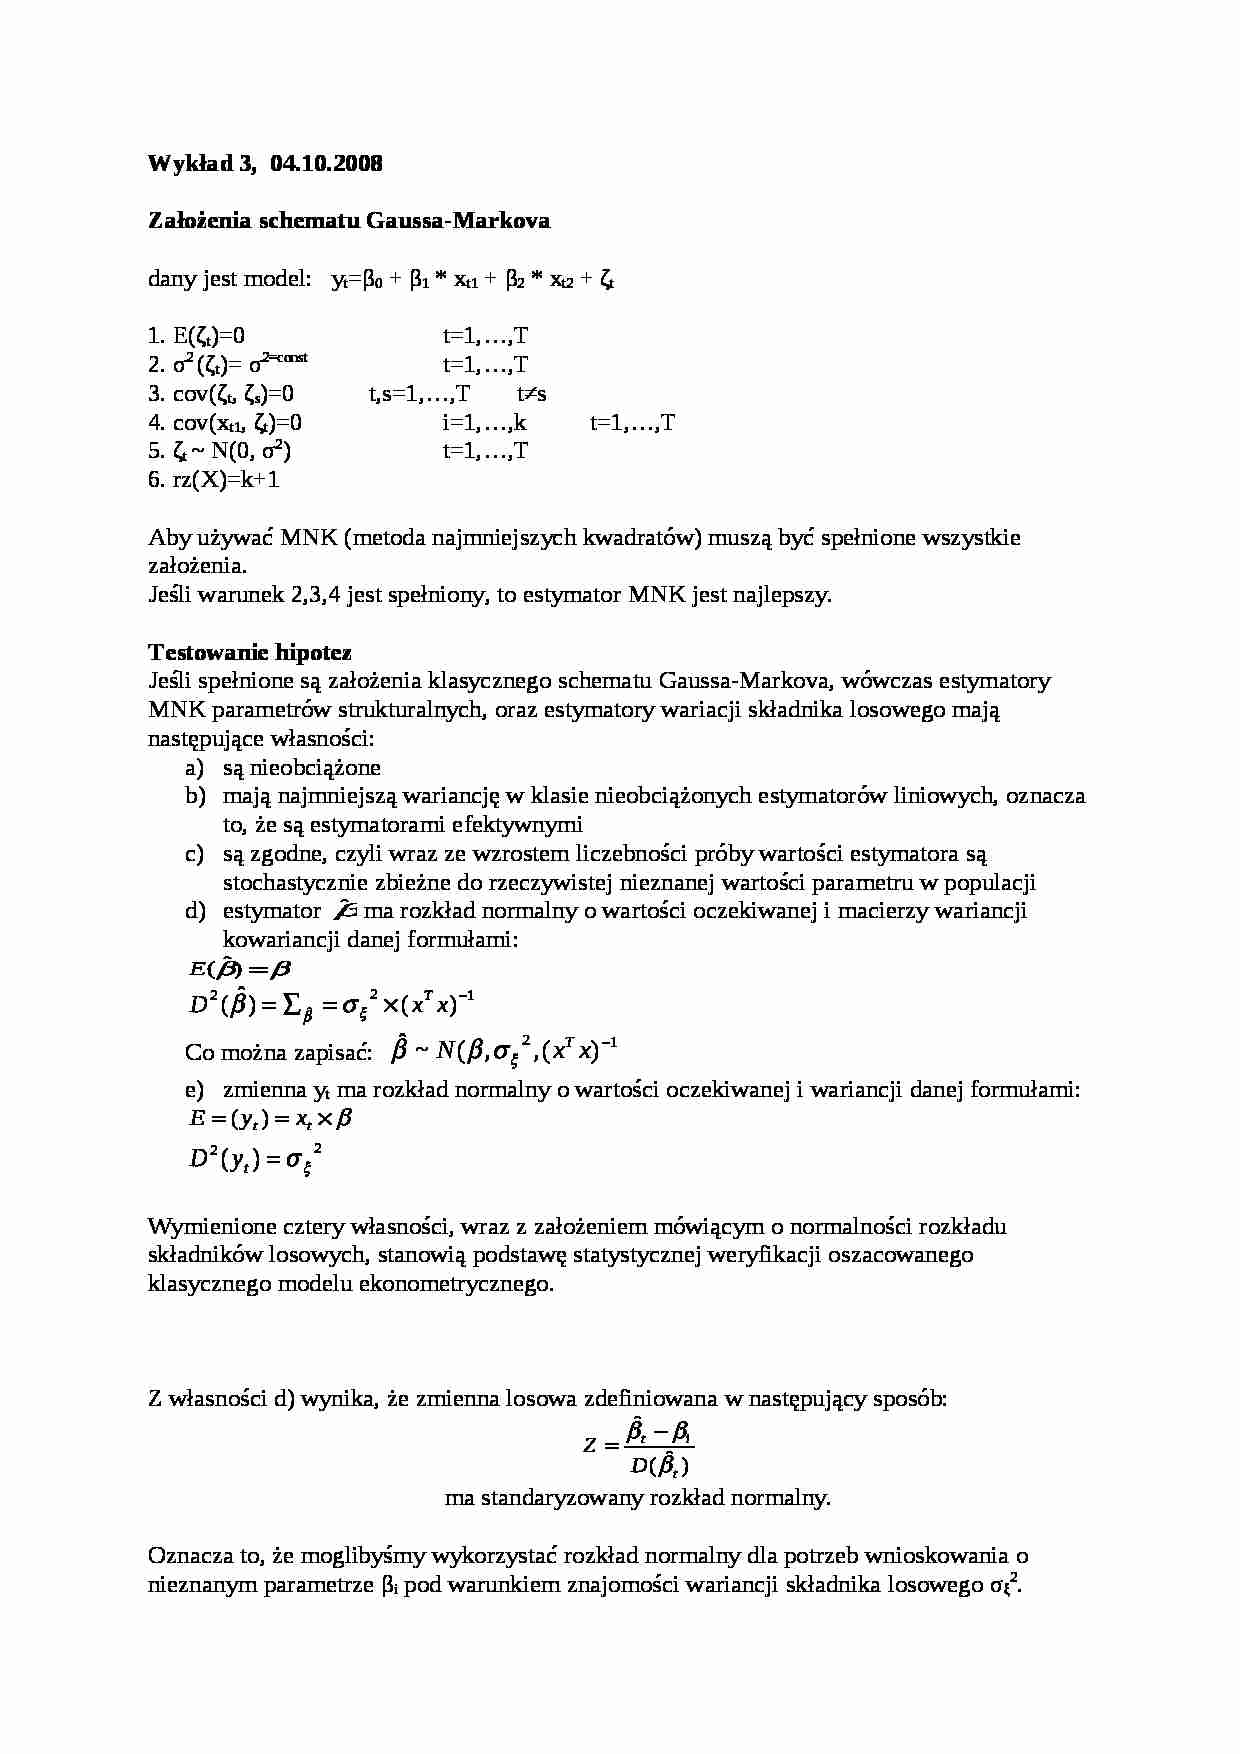 Schemat Gaussa-Markowa - strona 1